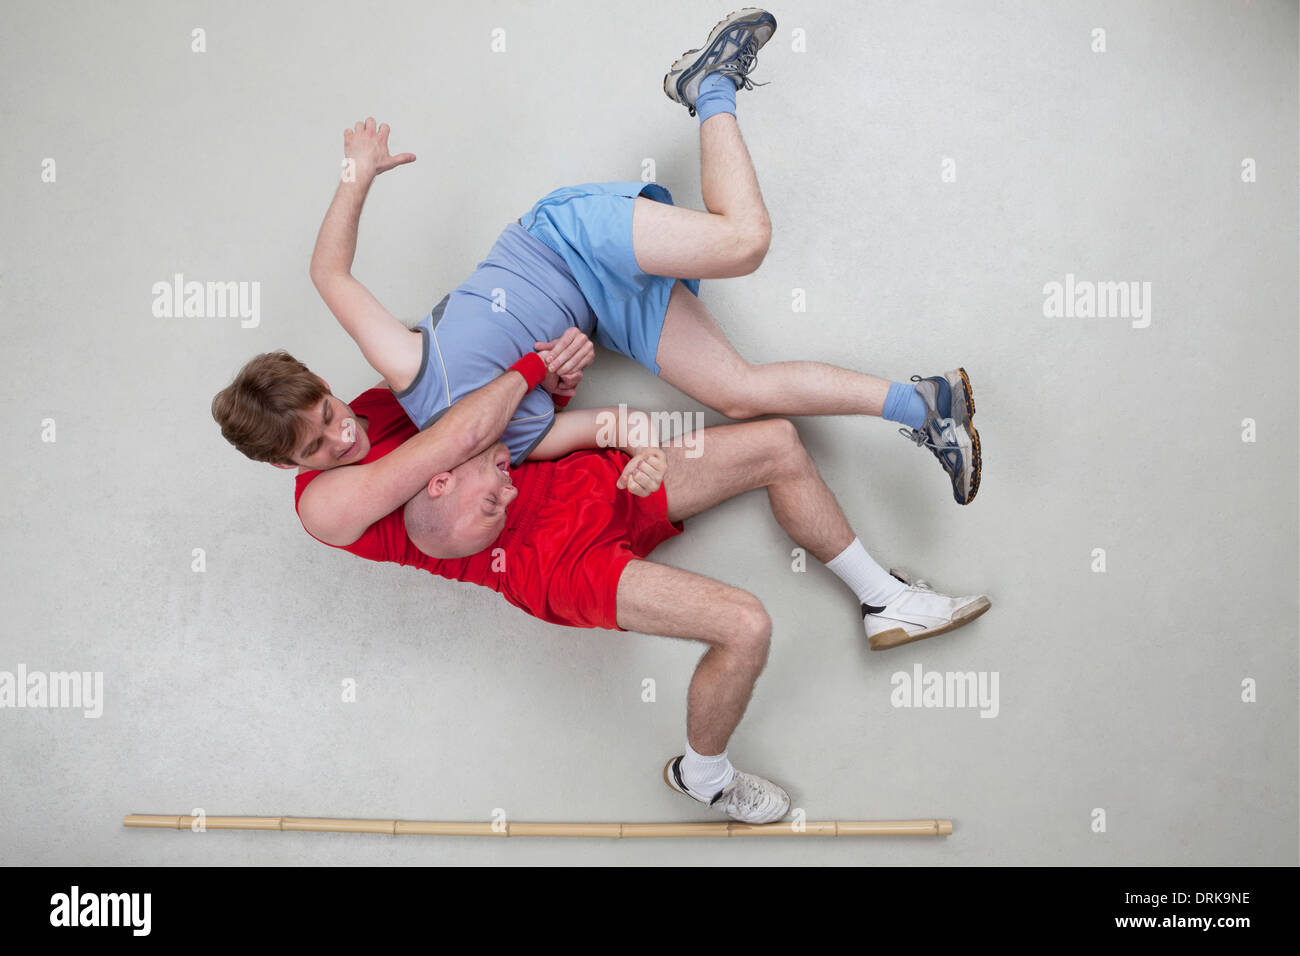 Two men wrestling Stock Photo